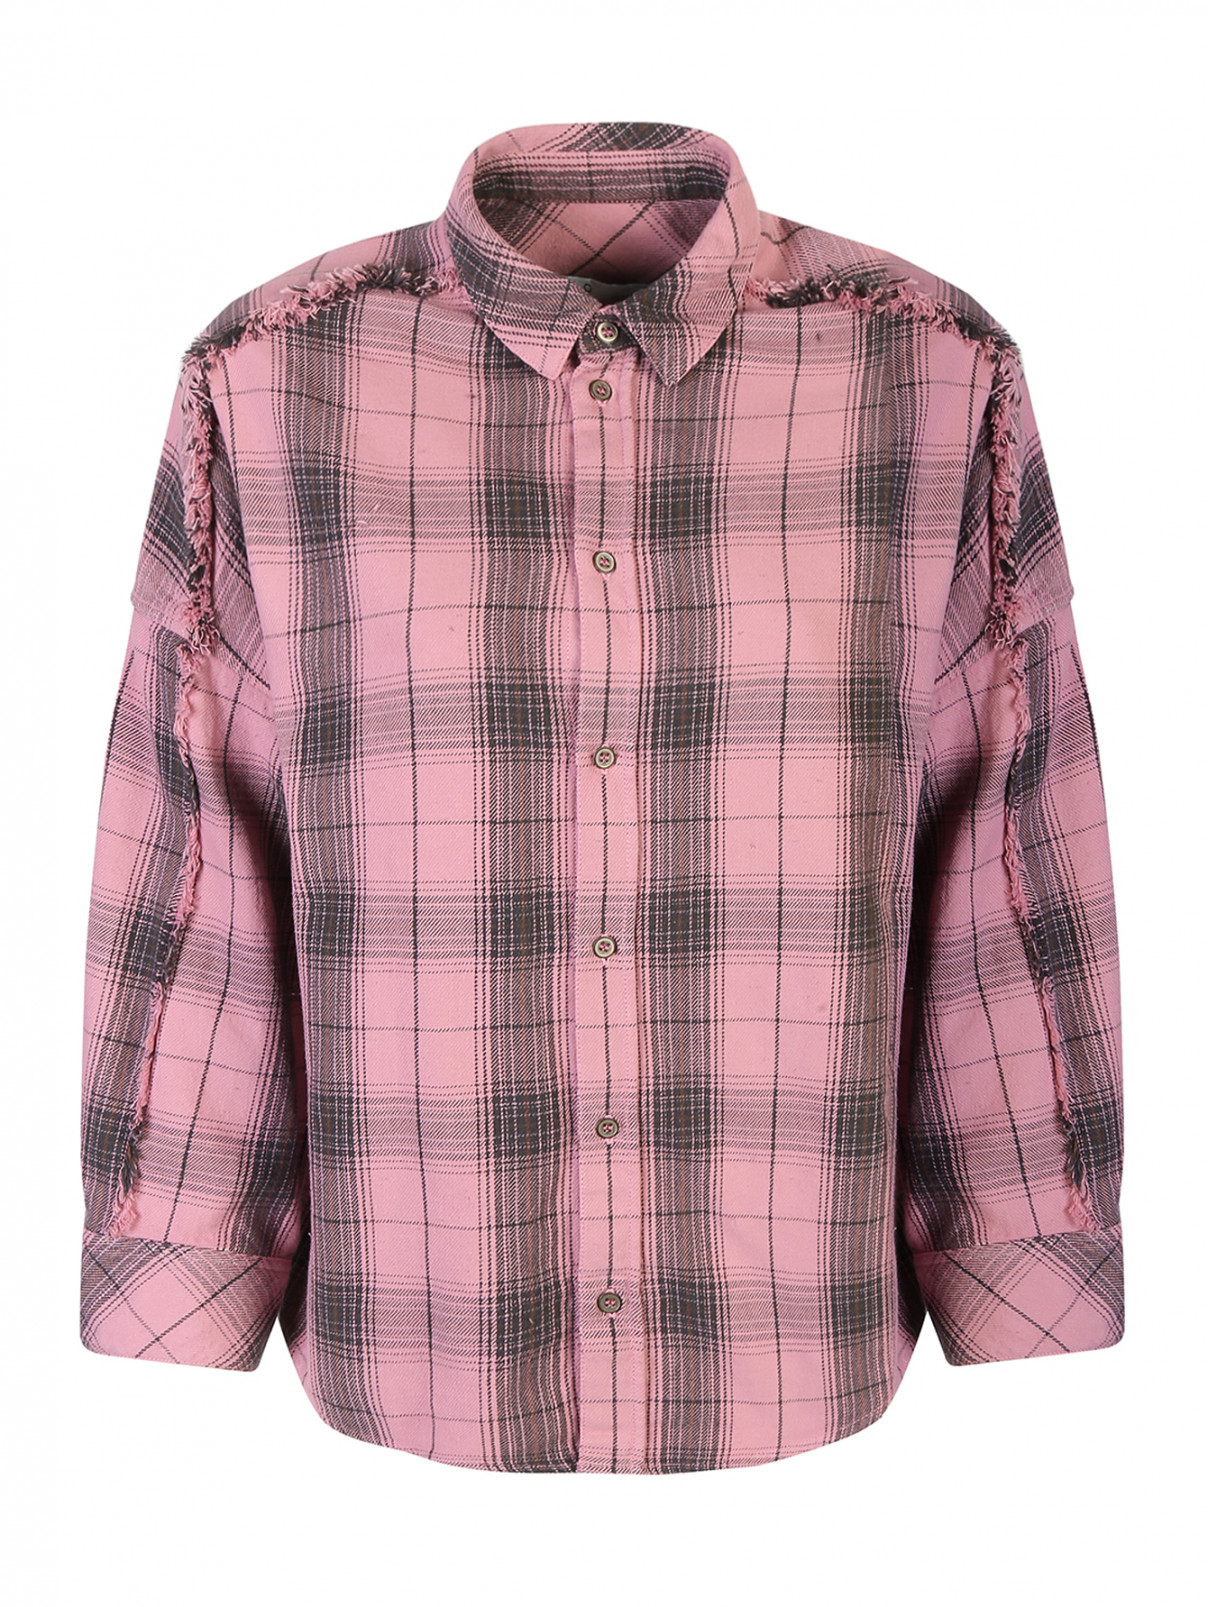 Рубашка хлопковая с узором клетка Iro  –  Общий вид  – Цвет:  Розовый